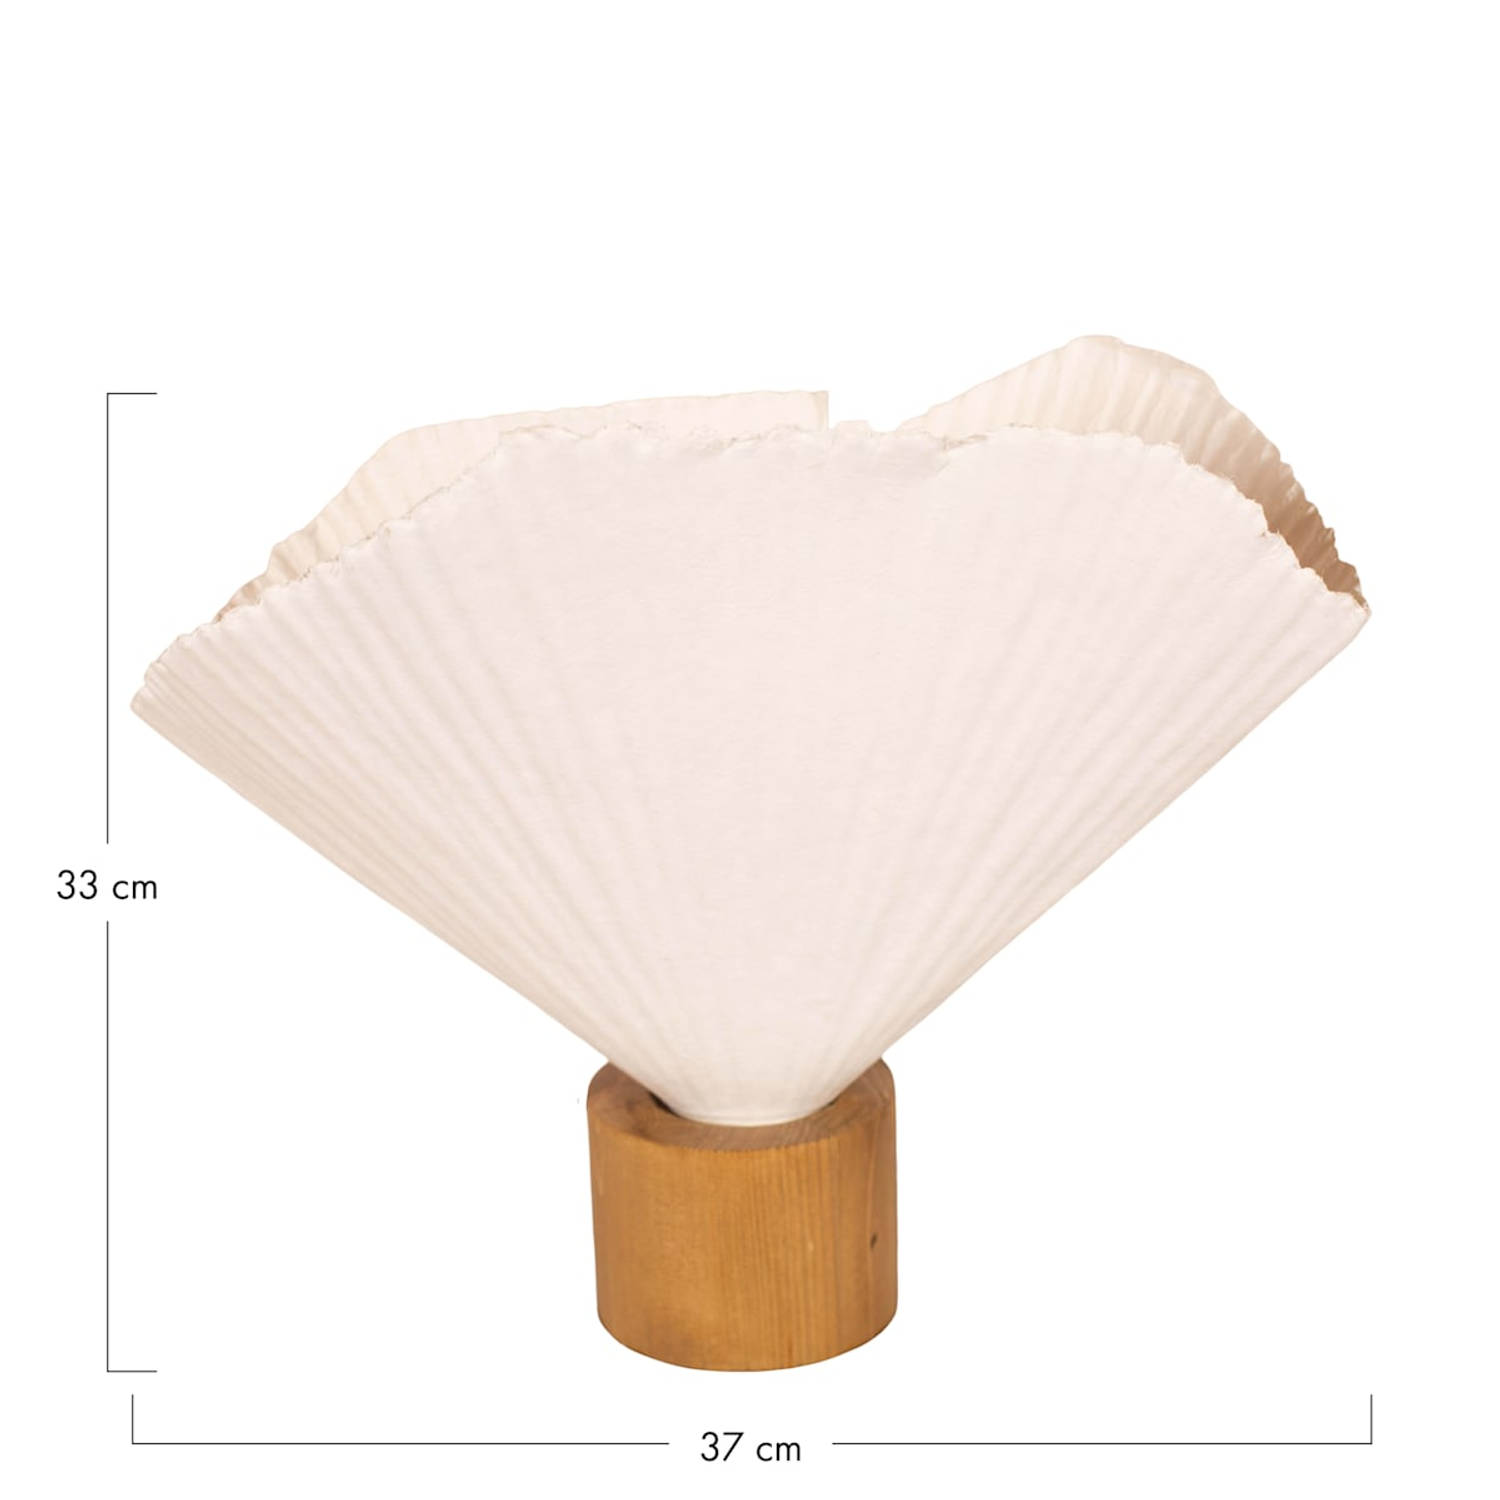 DKNC - Tafellamp Carter - Papier mache - 37x17x33cm - Wit